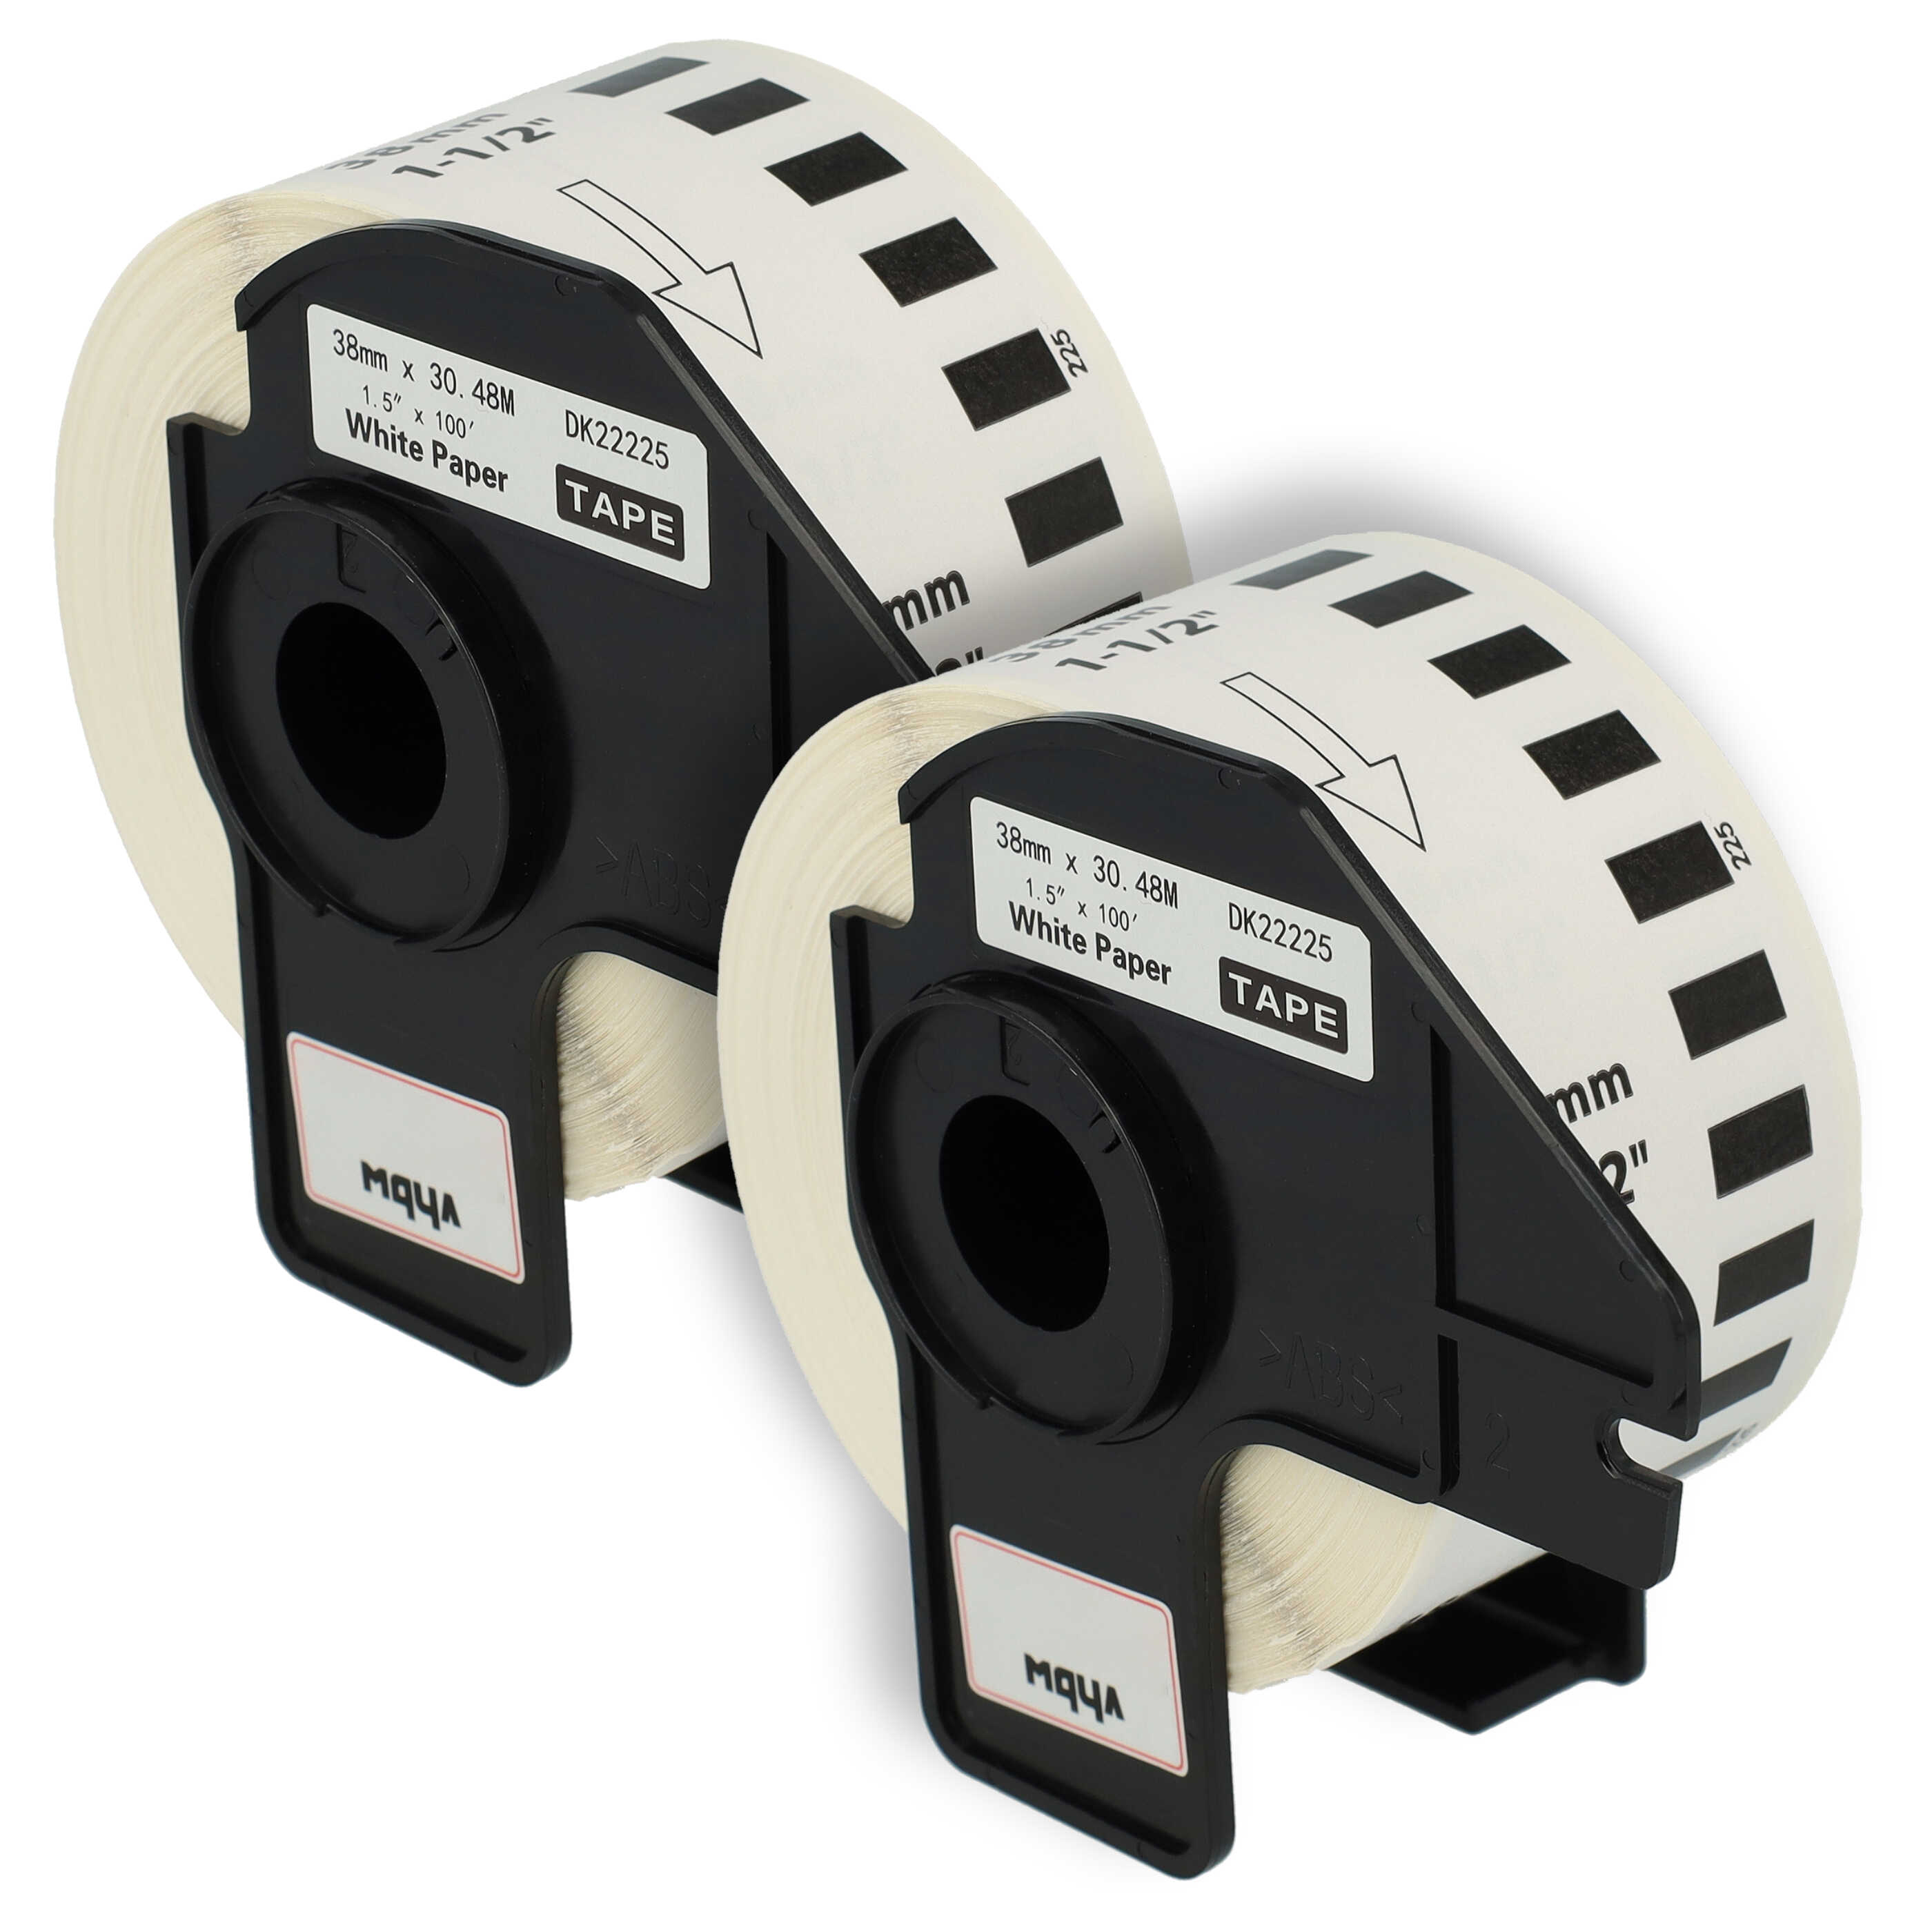 2x Etiketten als Ersatz für Brother DK-22225 für Etikettendrucker - 38mm x 30,48m + Halter